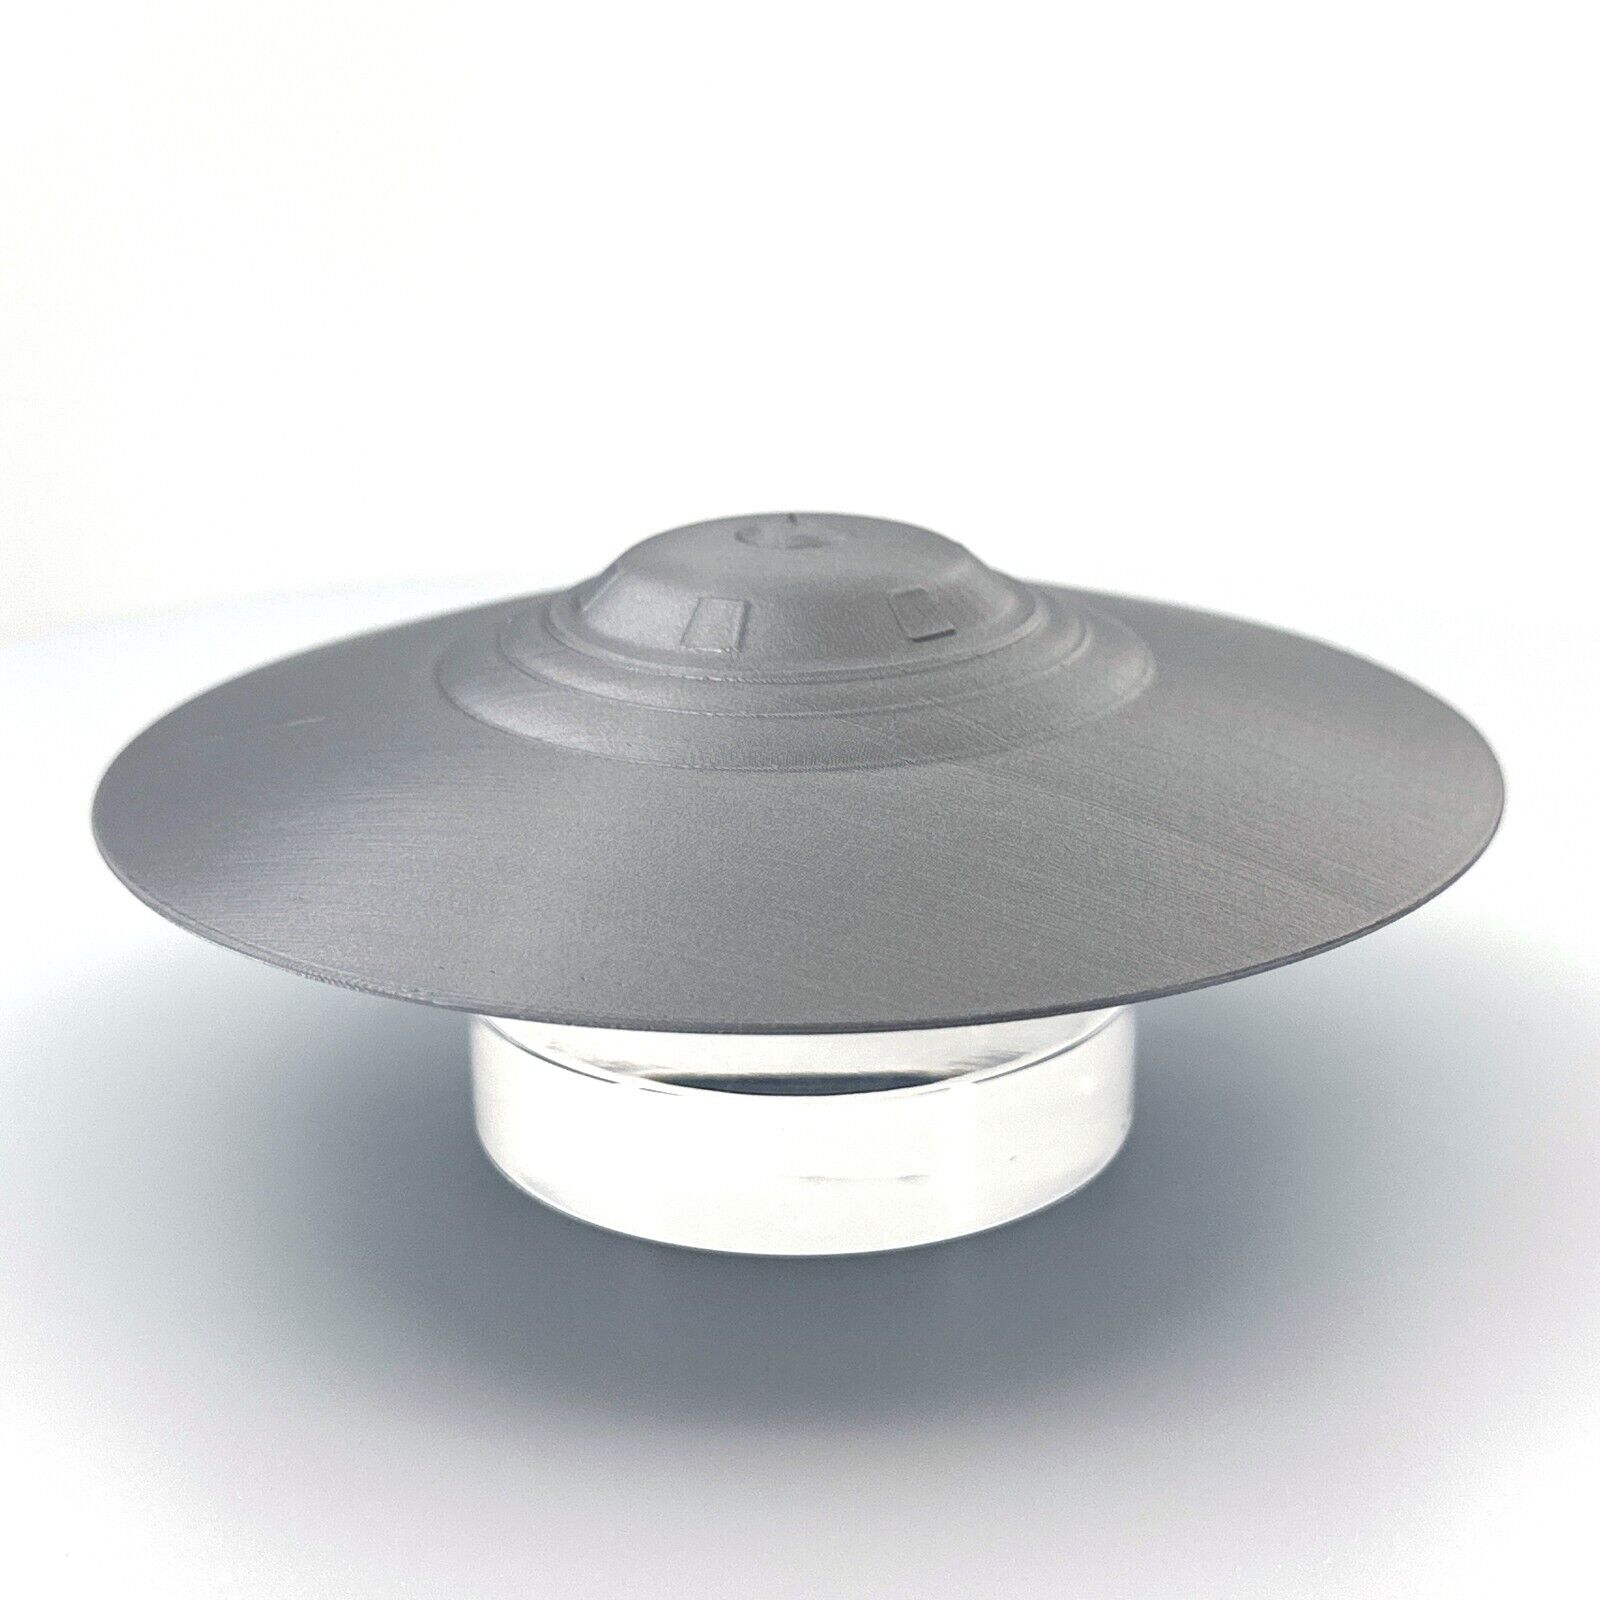 Bob Lazar S4 Sport Model UFO Inspired 3D Printed Model - Silver